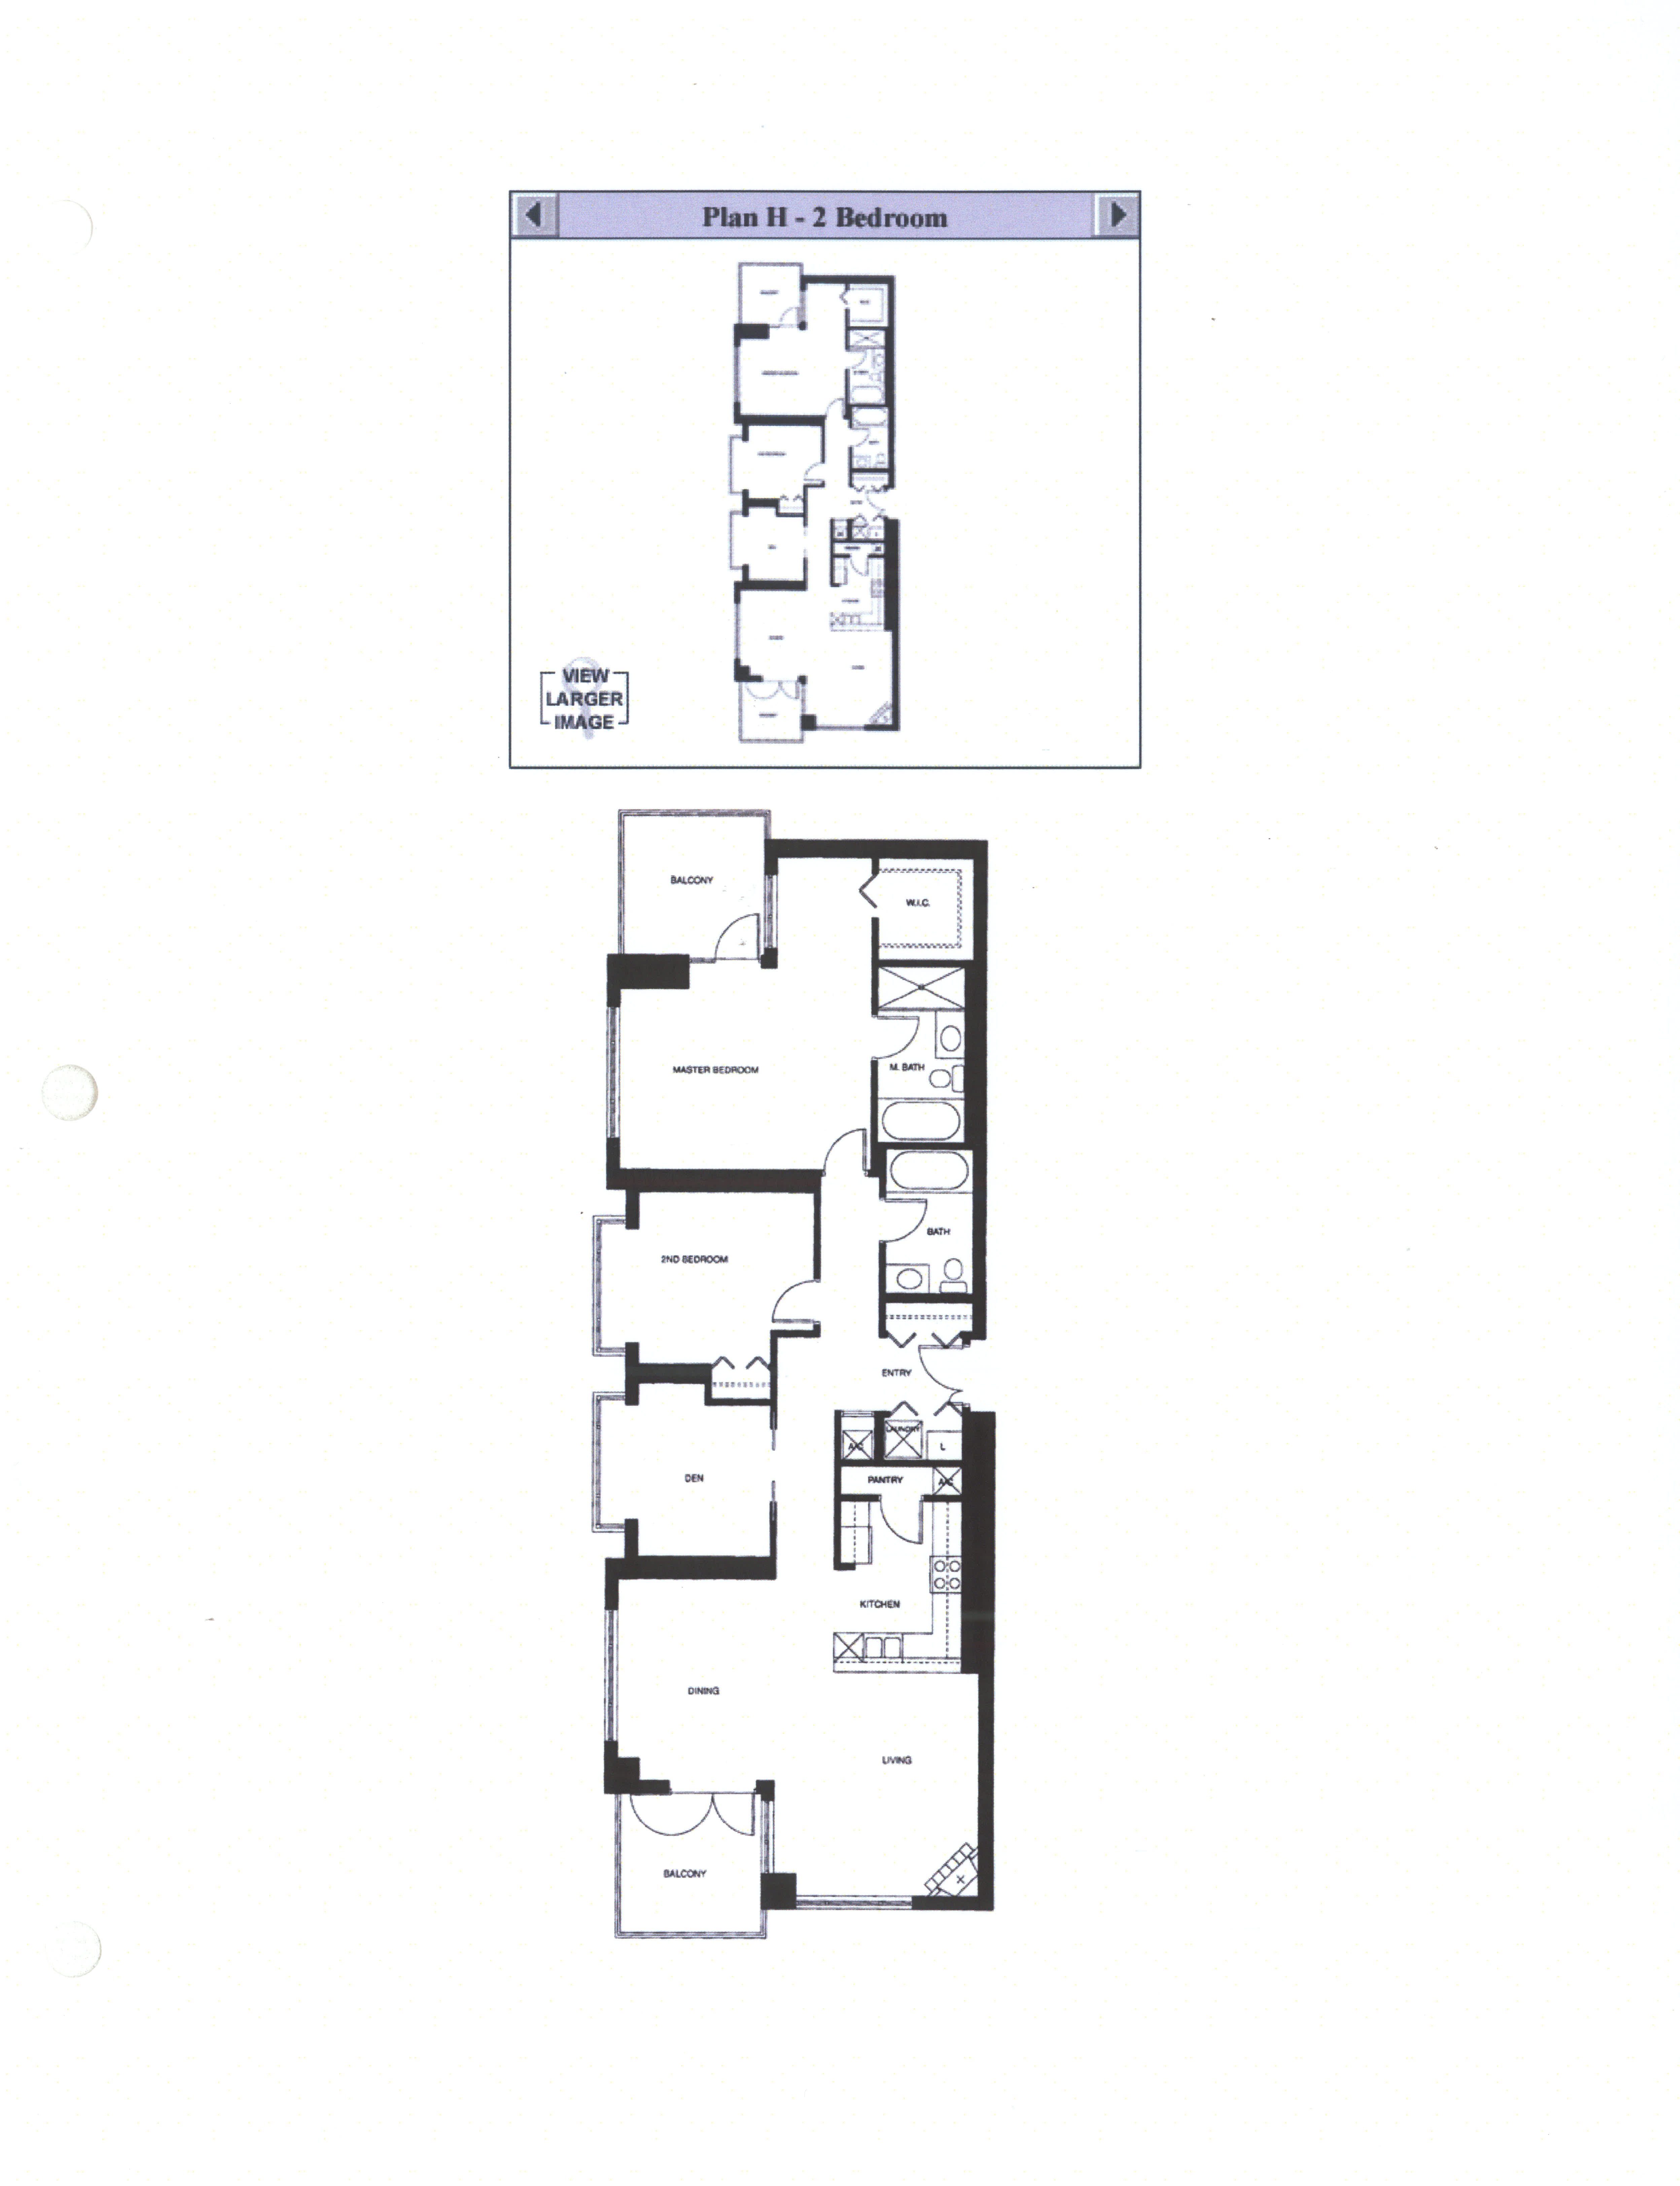 Discovery Floor Plan H - 2 Bedroom